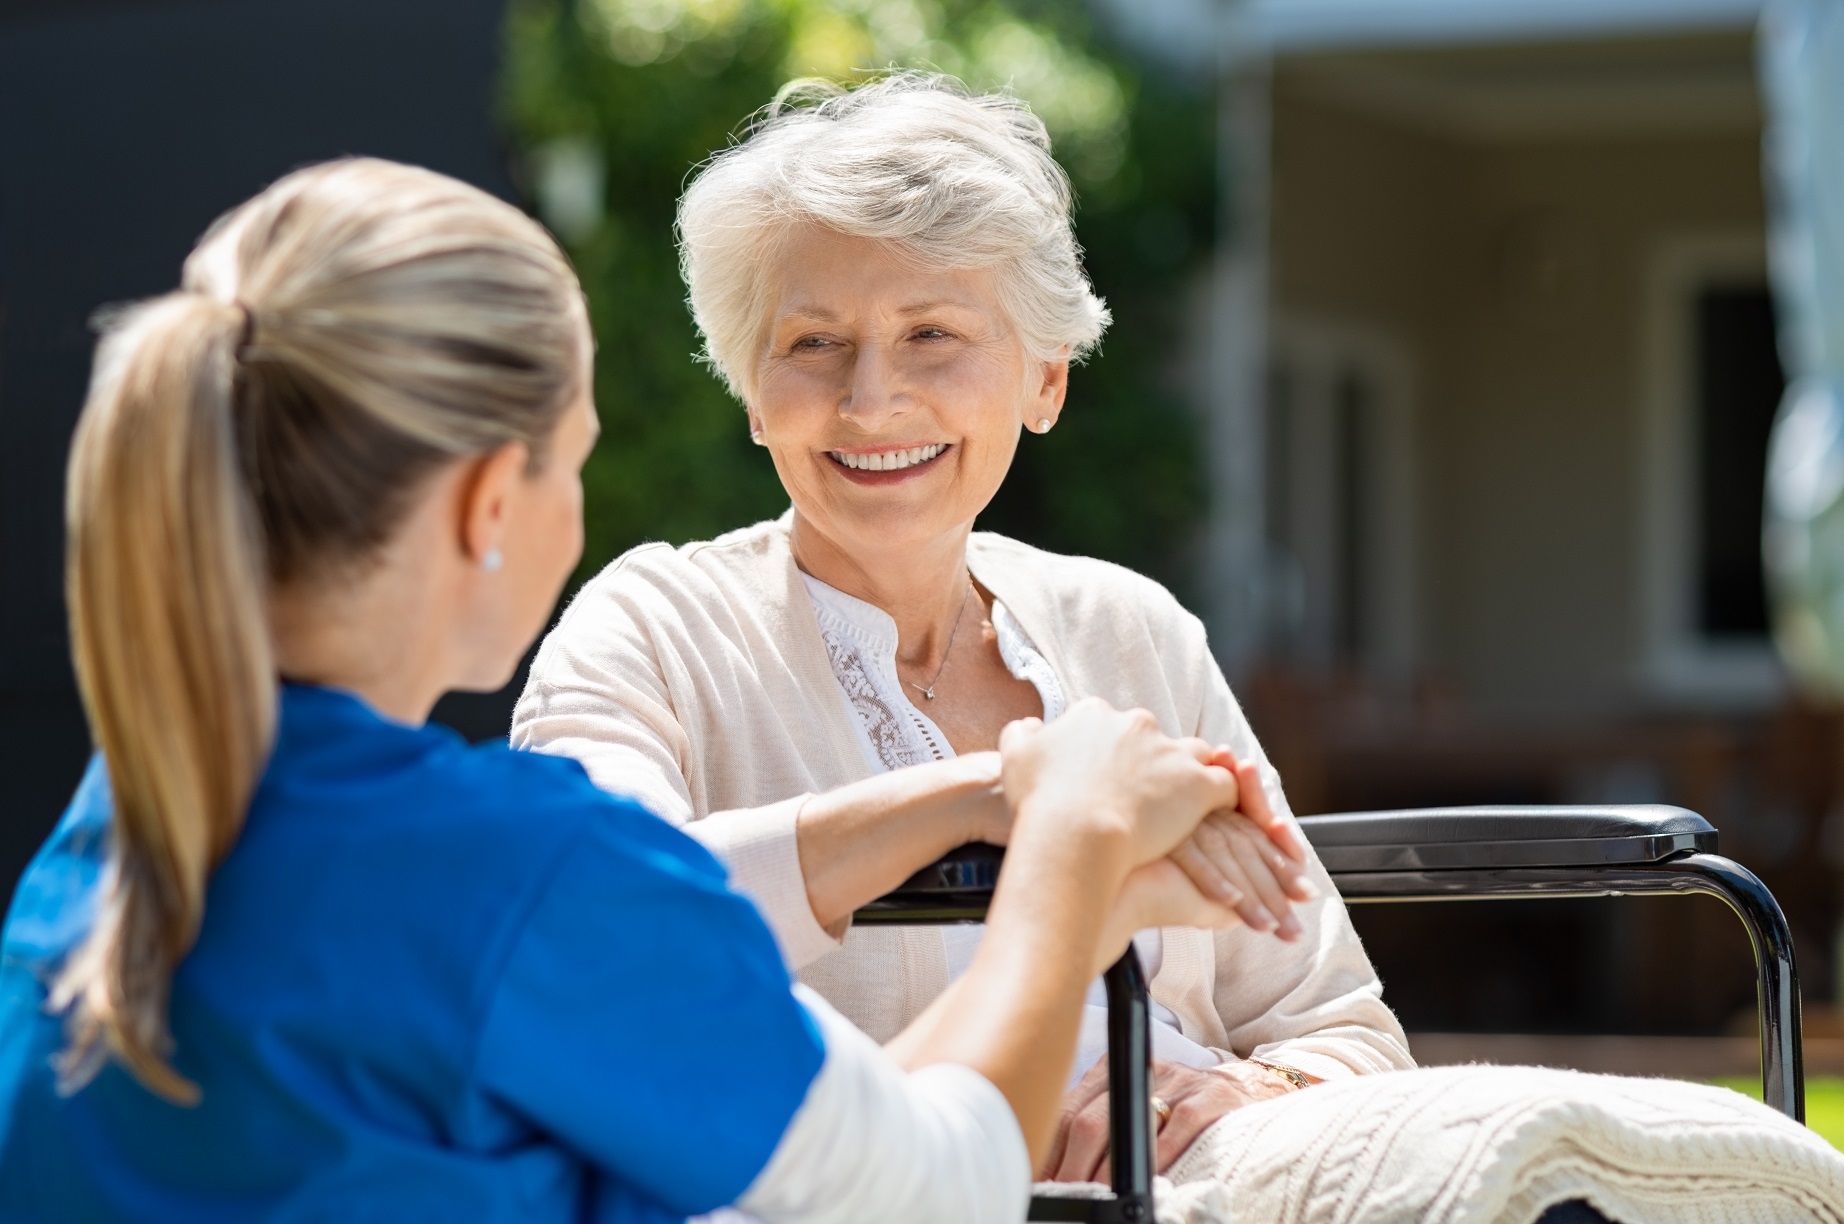 Praca opiekunki osób starszych – jak dobrze radzić sobie ze stresem? - Zdjęcie główne